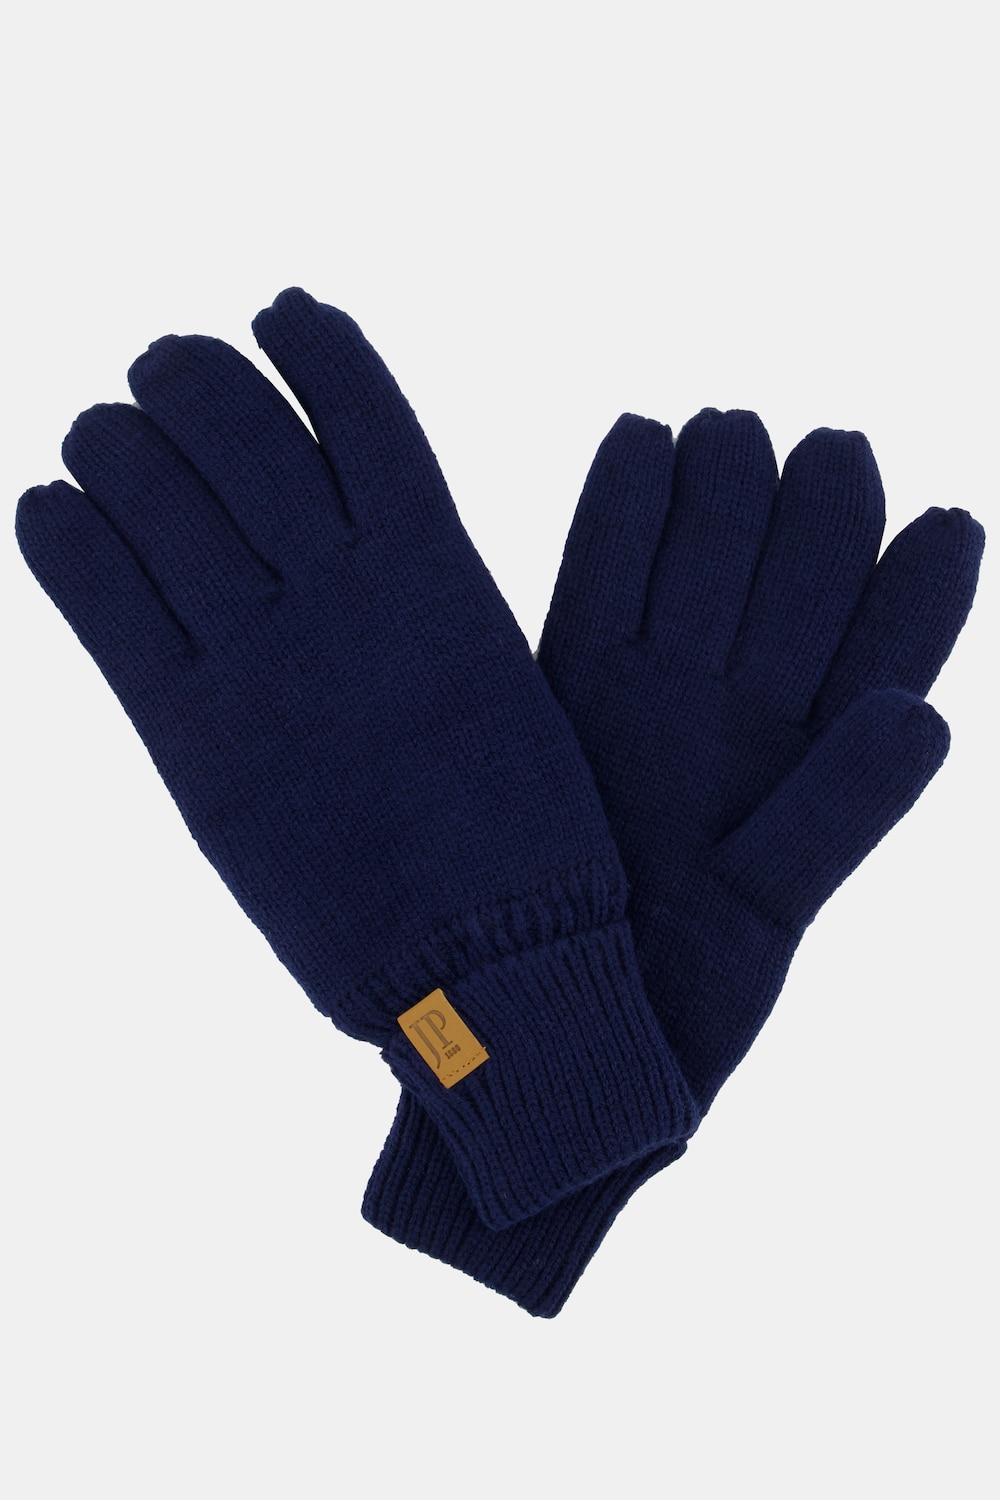 grandes tailles gants en maille et doublure polaire, hommes, bleu, taille: one size, fibres synthétiques, jp1880